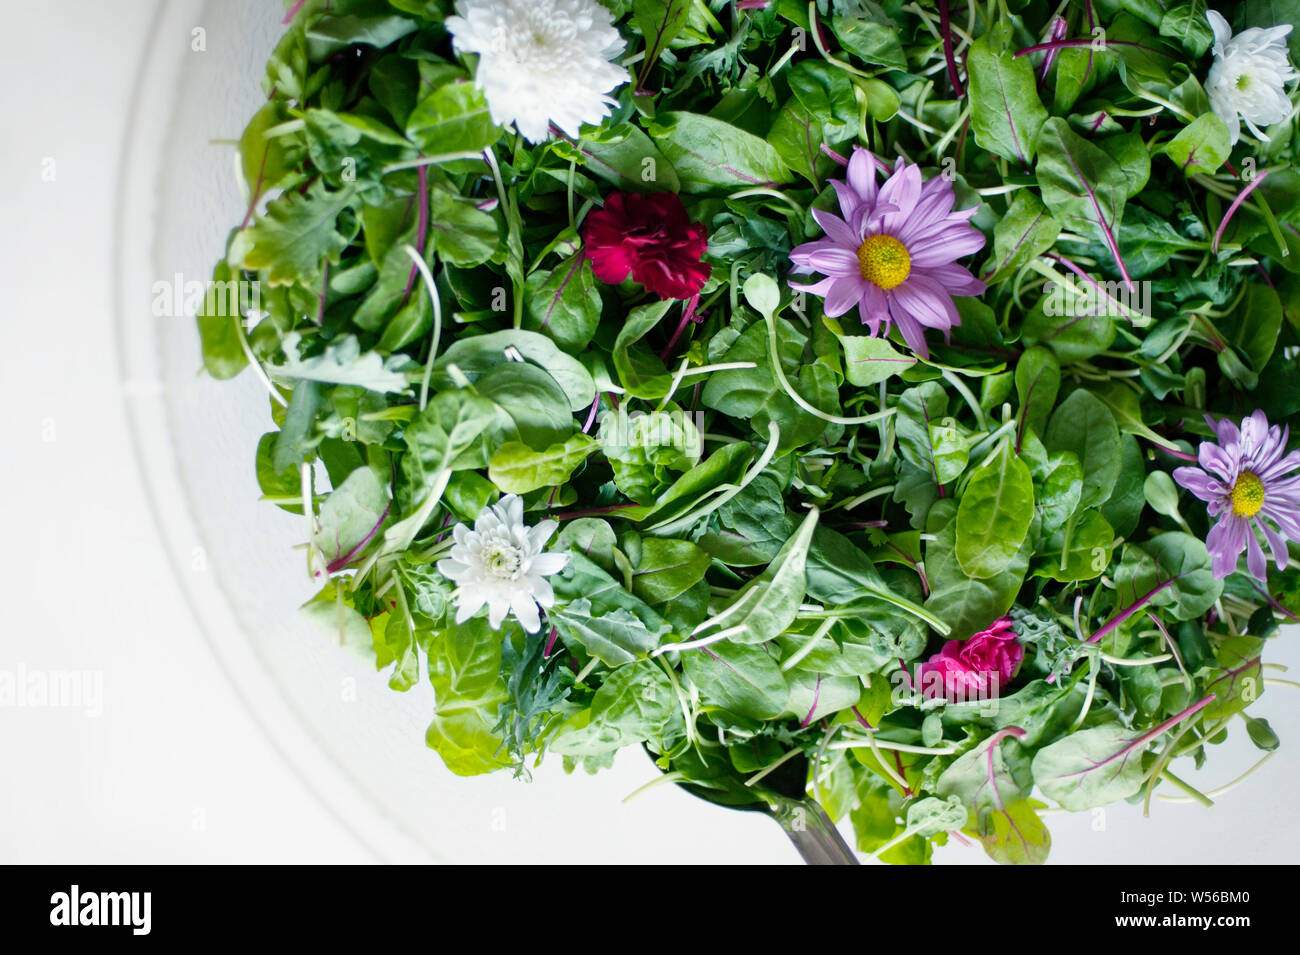 Materie vegano dieta alimentare. Insalata con fiori commestibili. Foto Stock